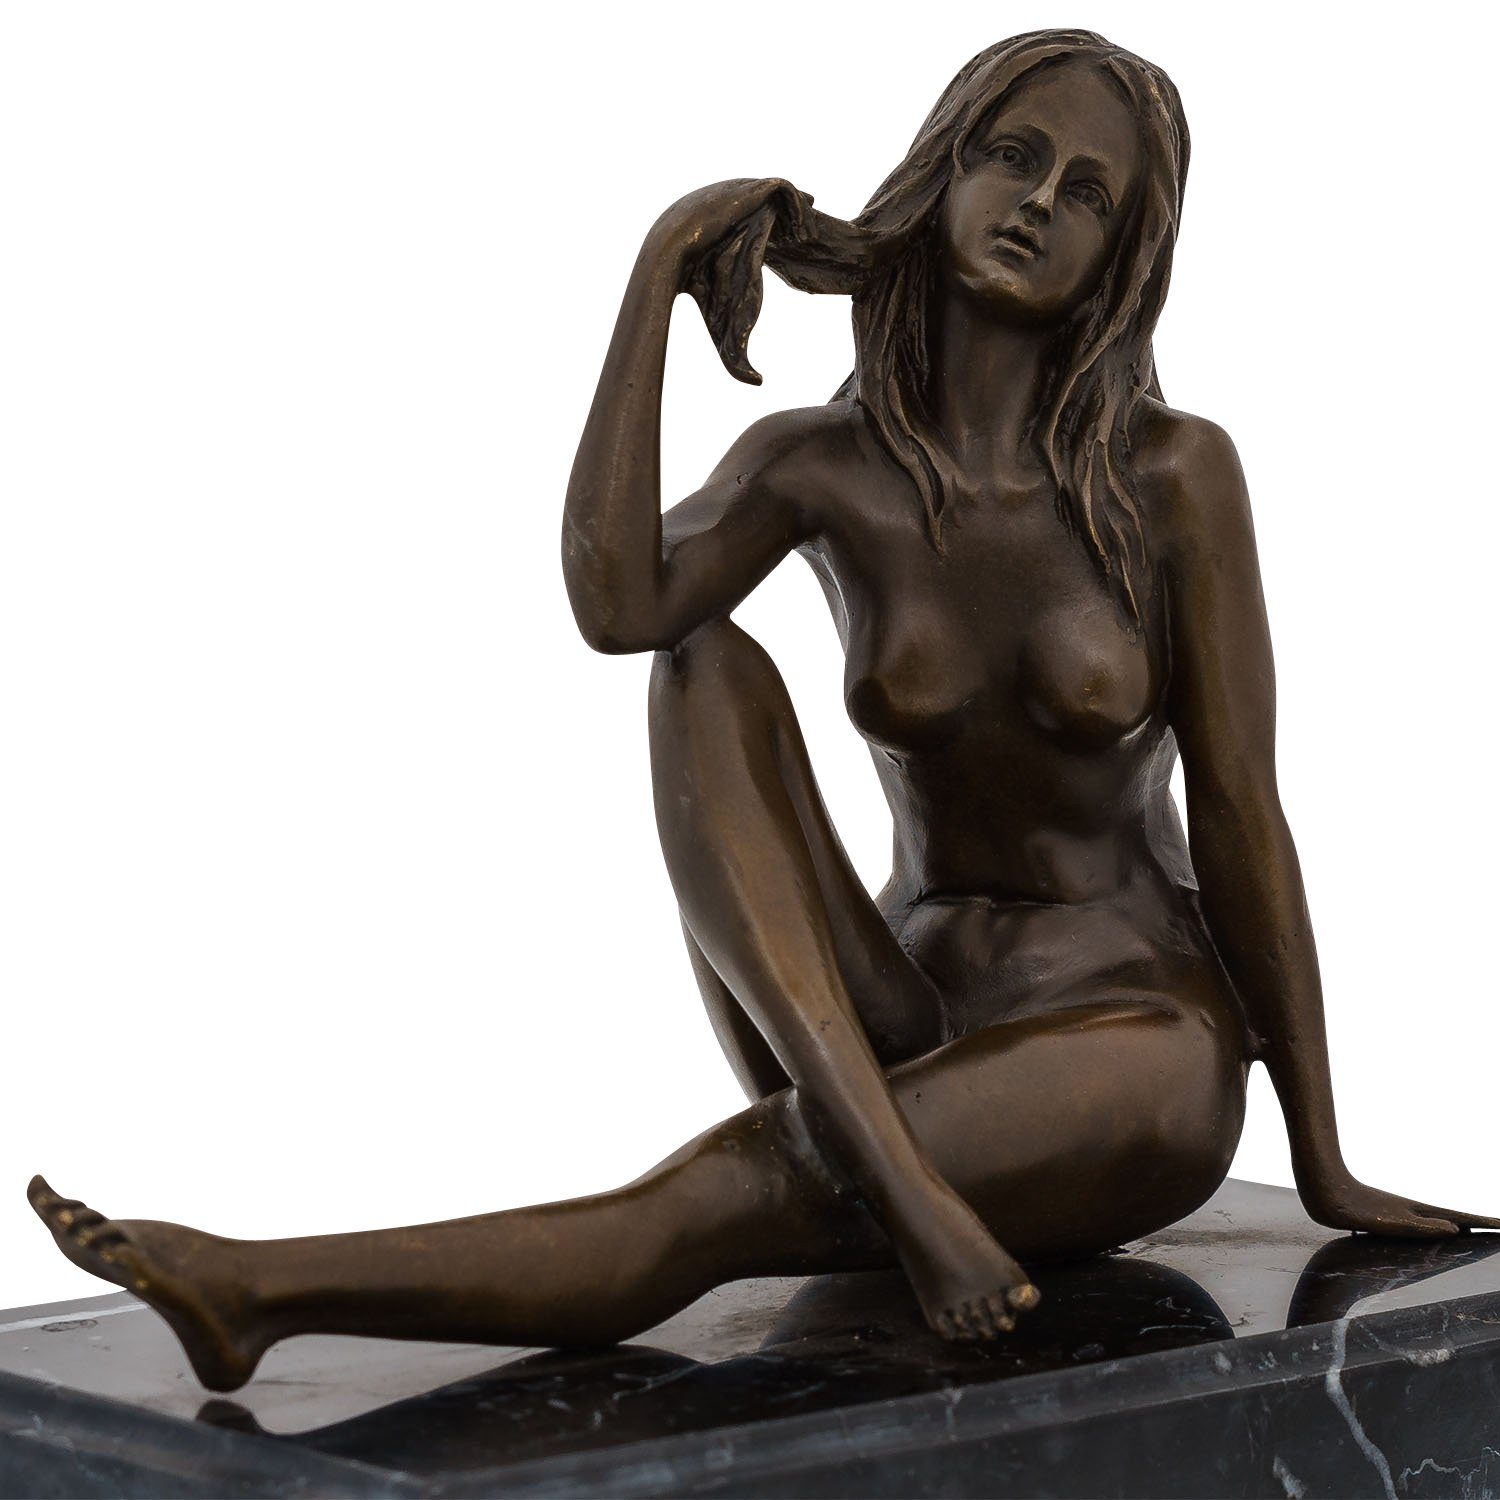 Frau Antik-Stil Bronzefigur Figur Bronze Aubaho Skulptur Akt sculpture Erotik Bronzeskulptur